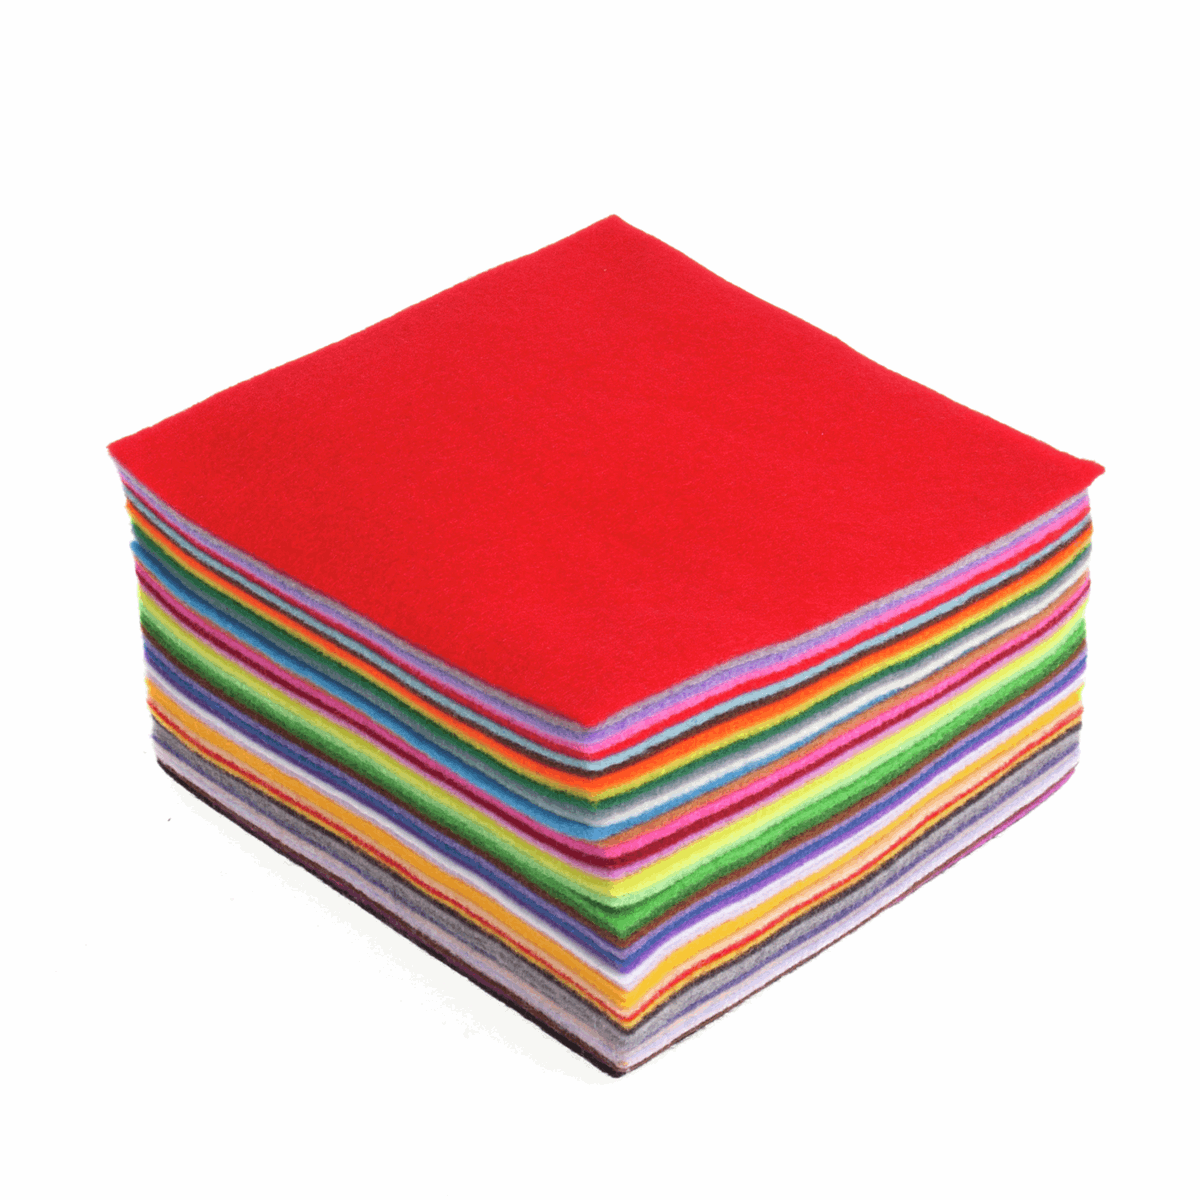 Trimits Felt Acrylic Squares 15cm x 15cm - Pack of 42 Mixed Colours